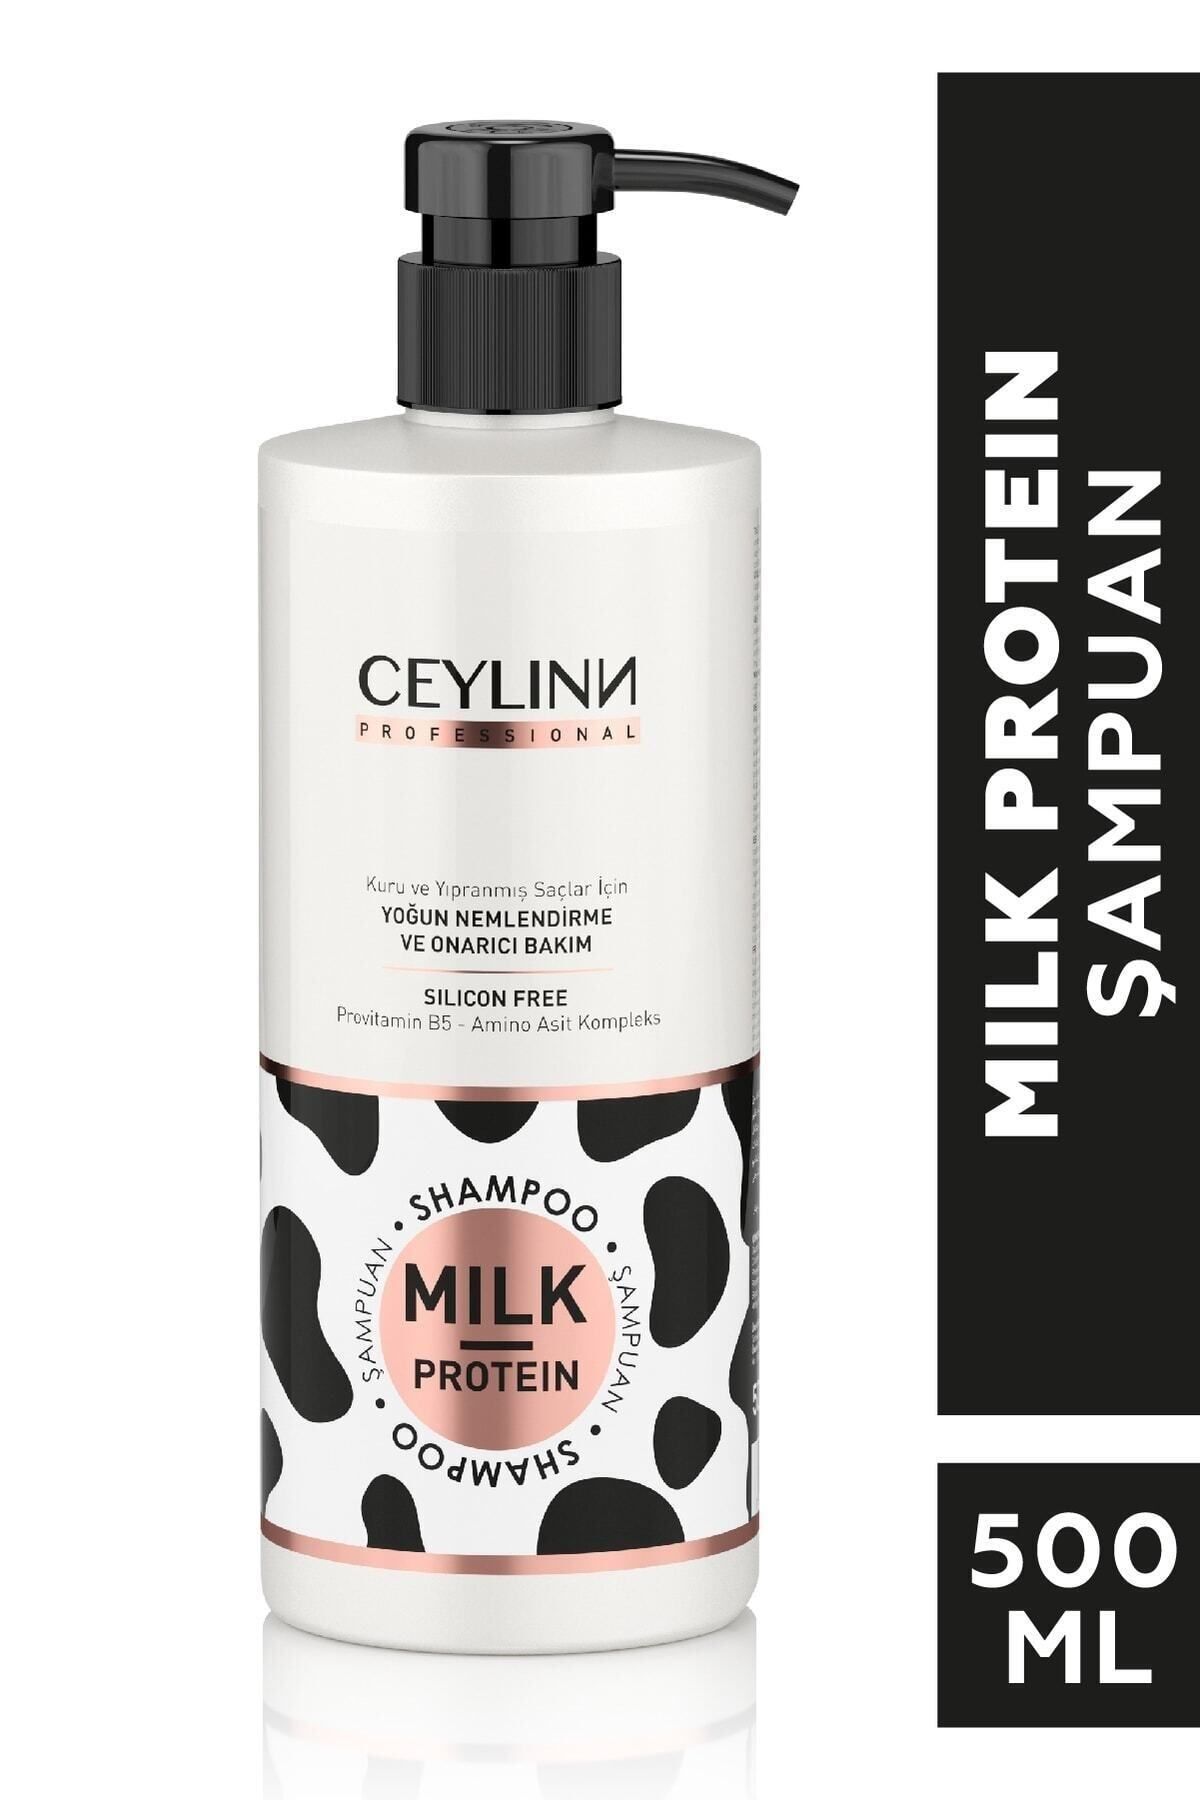 Ceylinn Yoğun Nemlendirme Milk Protein Şampuan 500 Ml..-